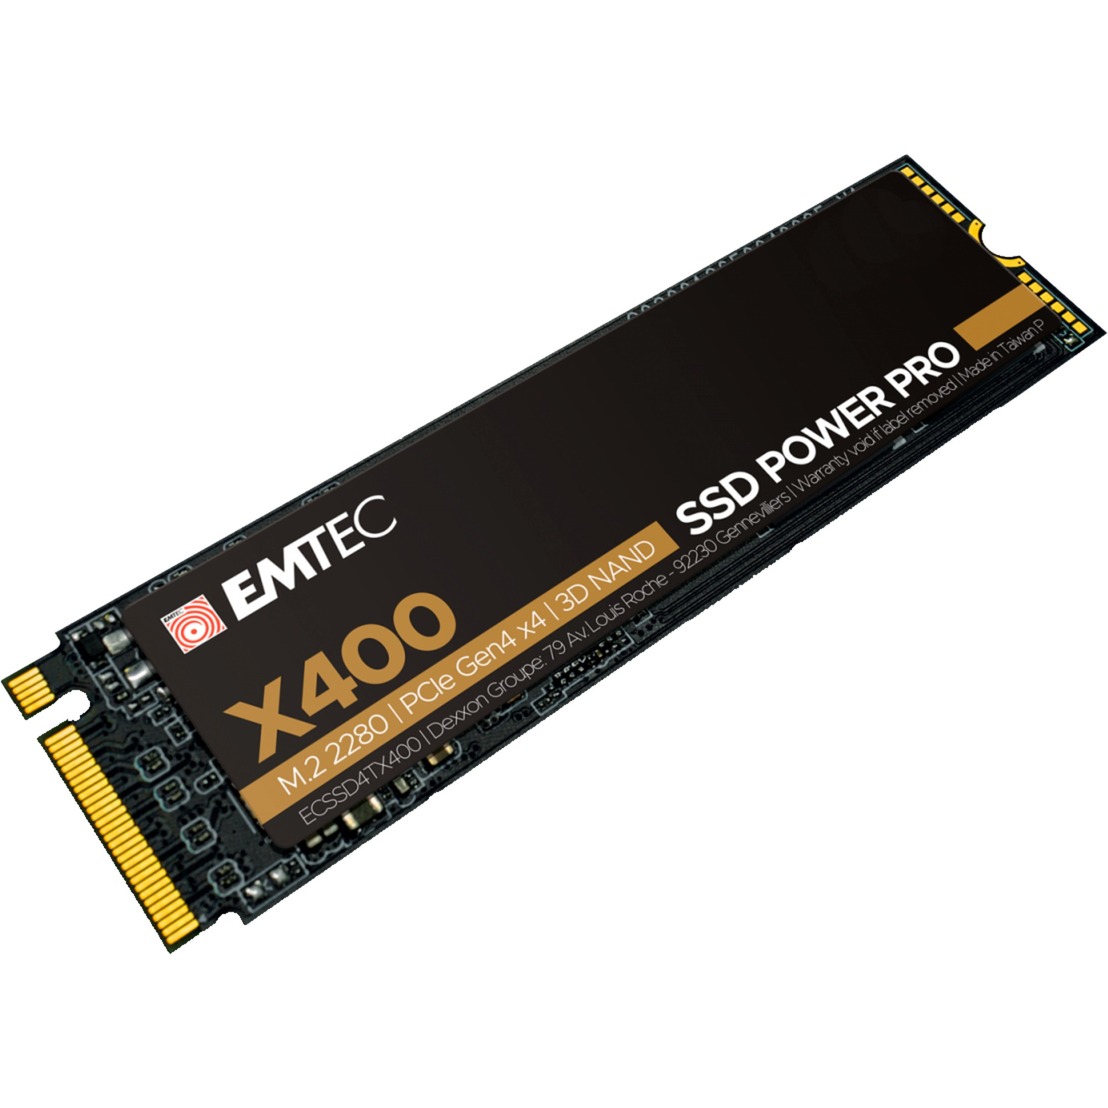 Image of Alternate - X400 SSD Power Pro 1 TB online einkaufen bei Alternate